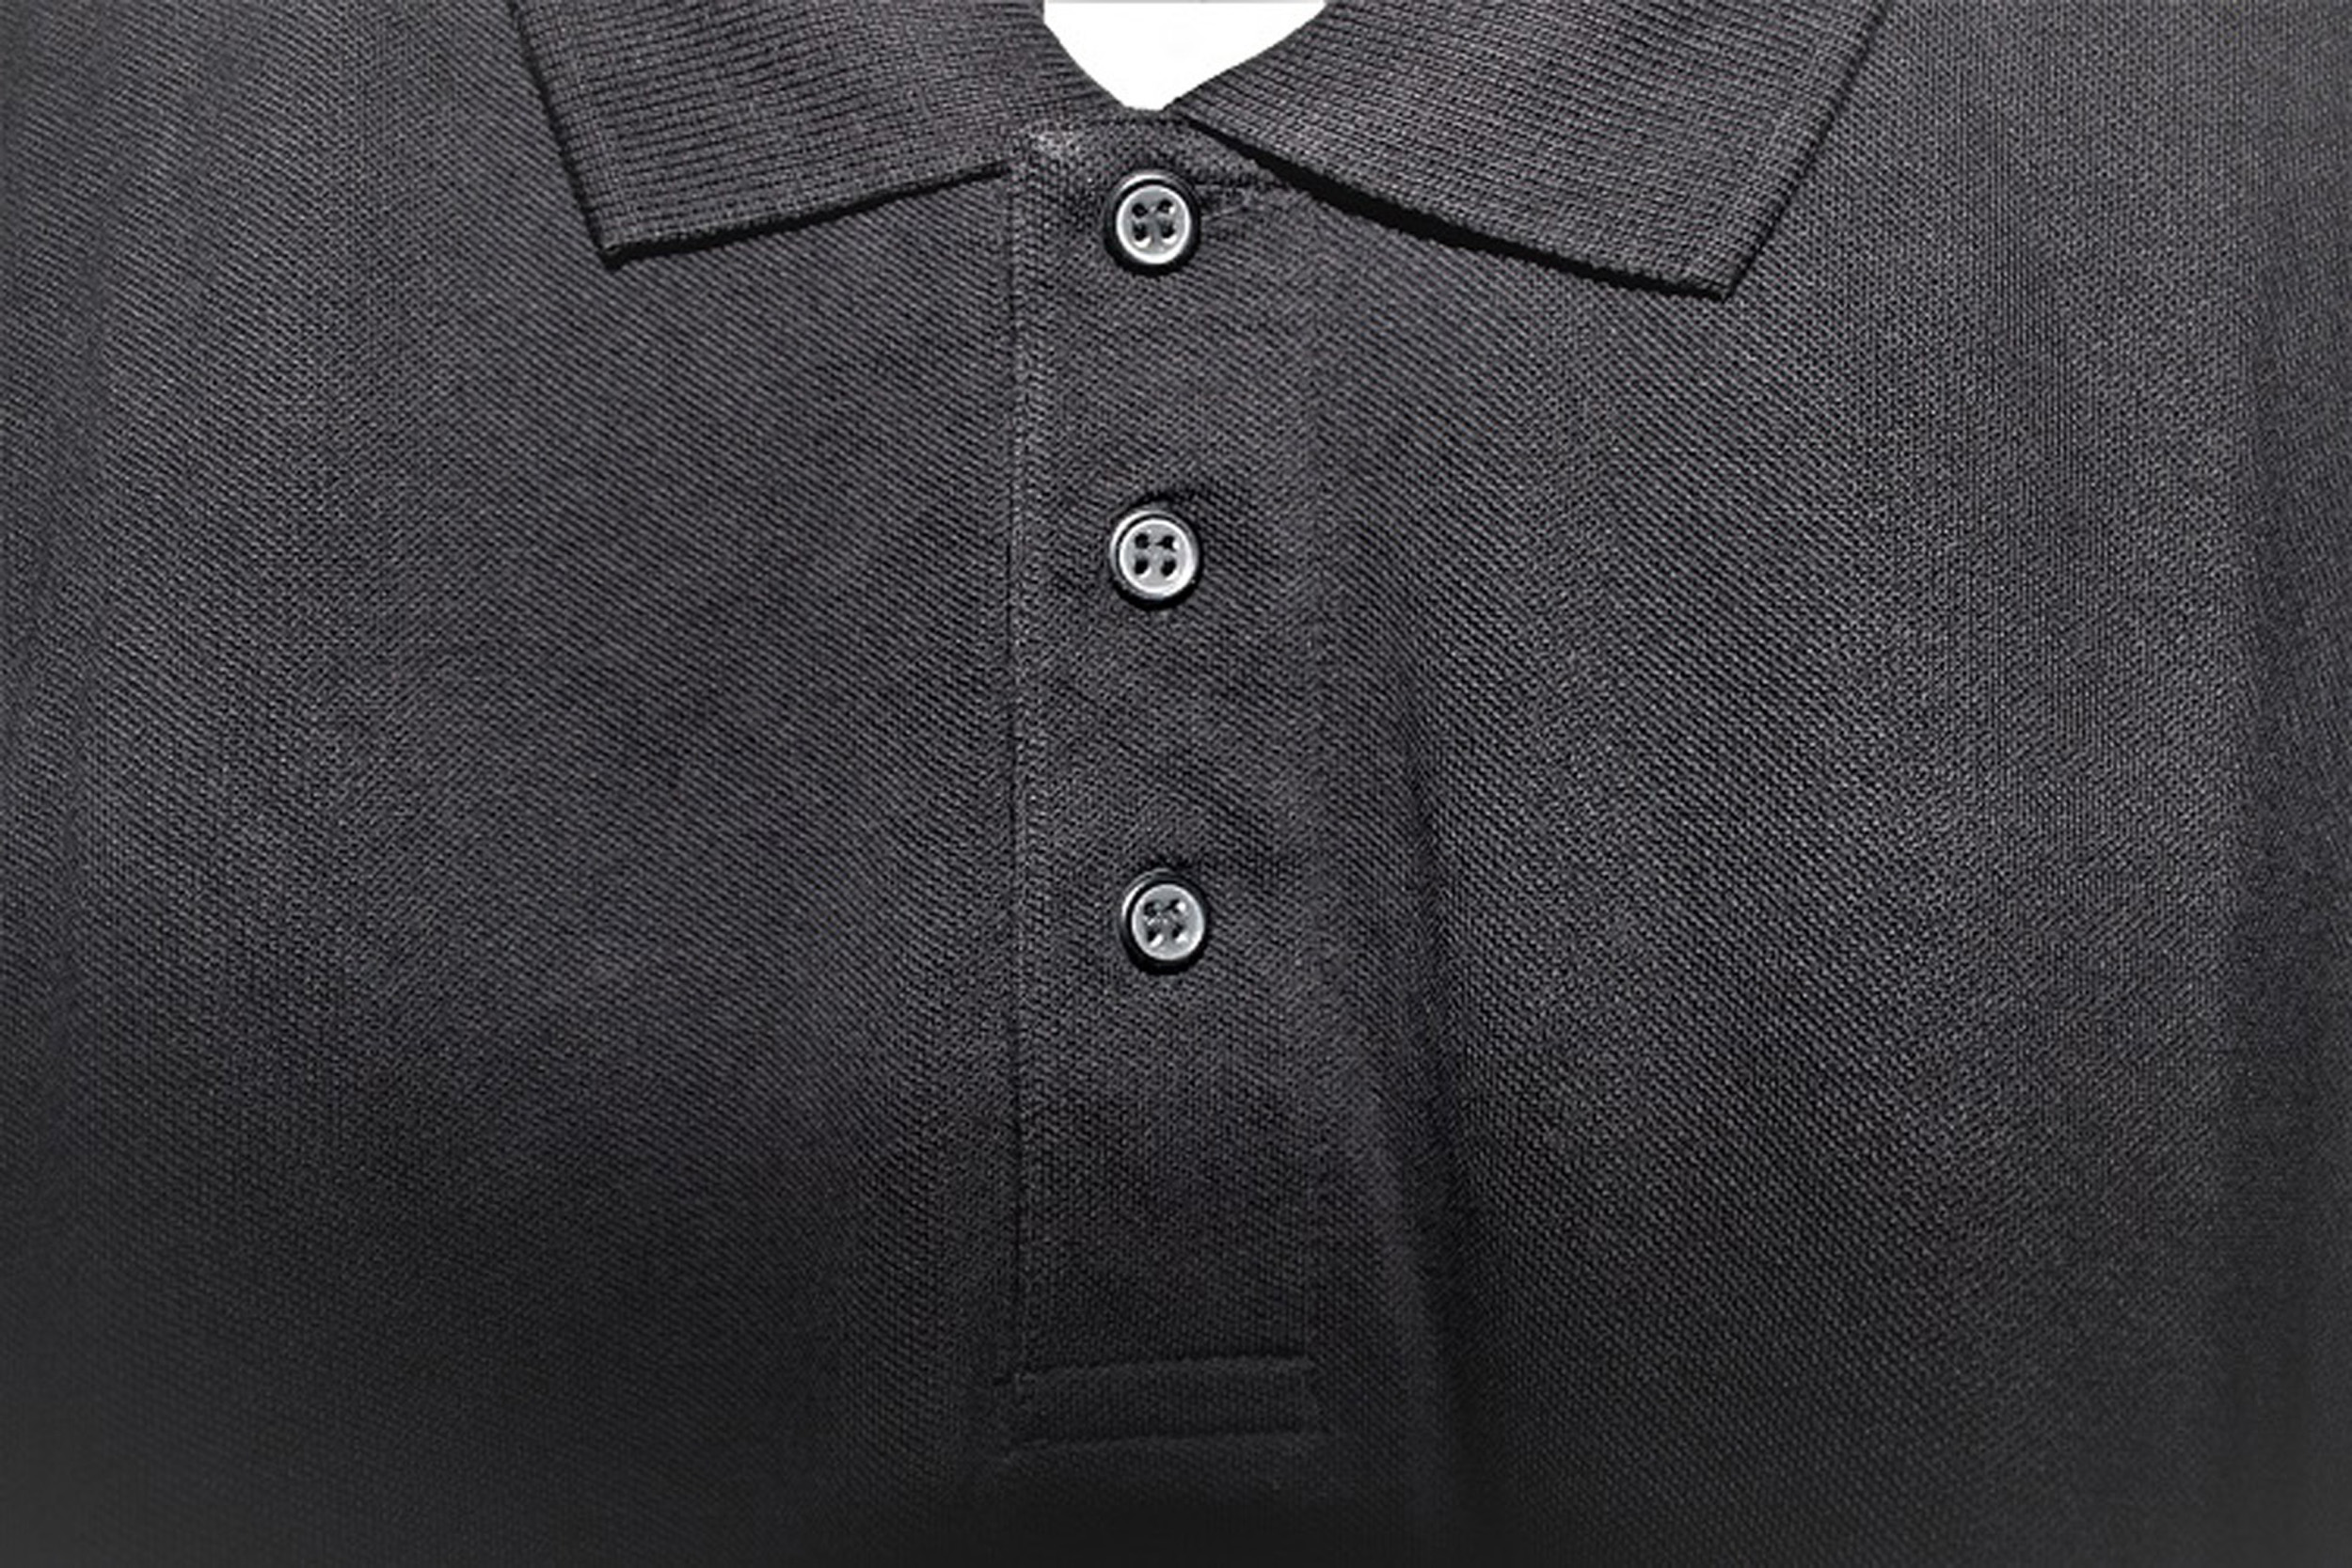 B&C SAFRAN Poloshirt schwarz Unisex Baumwolle Knopfleiste Polokragen T-Shirt